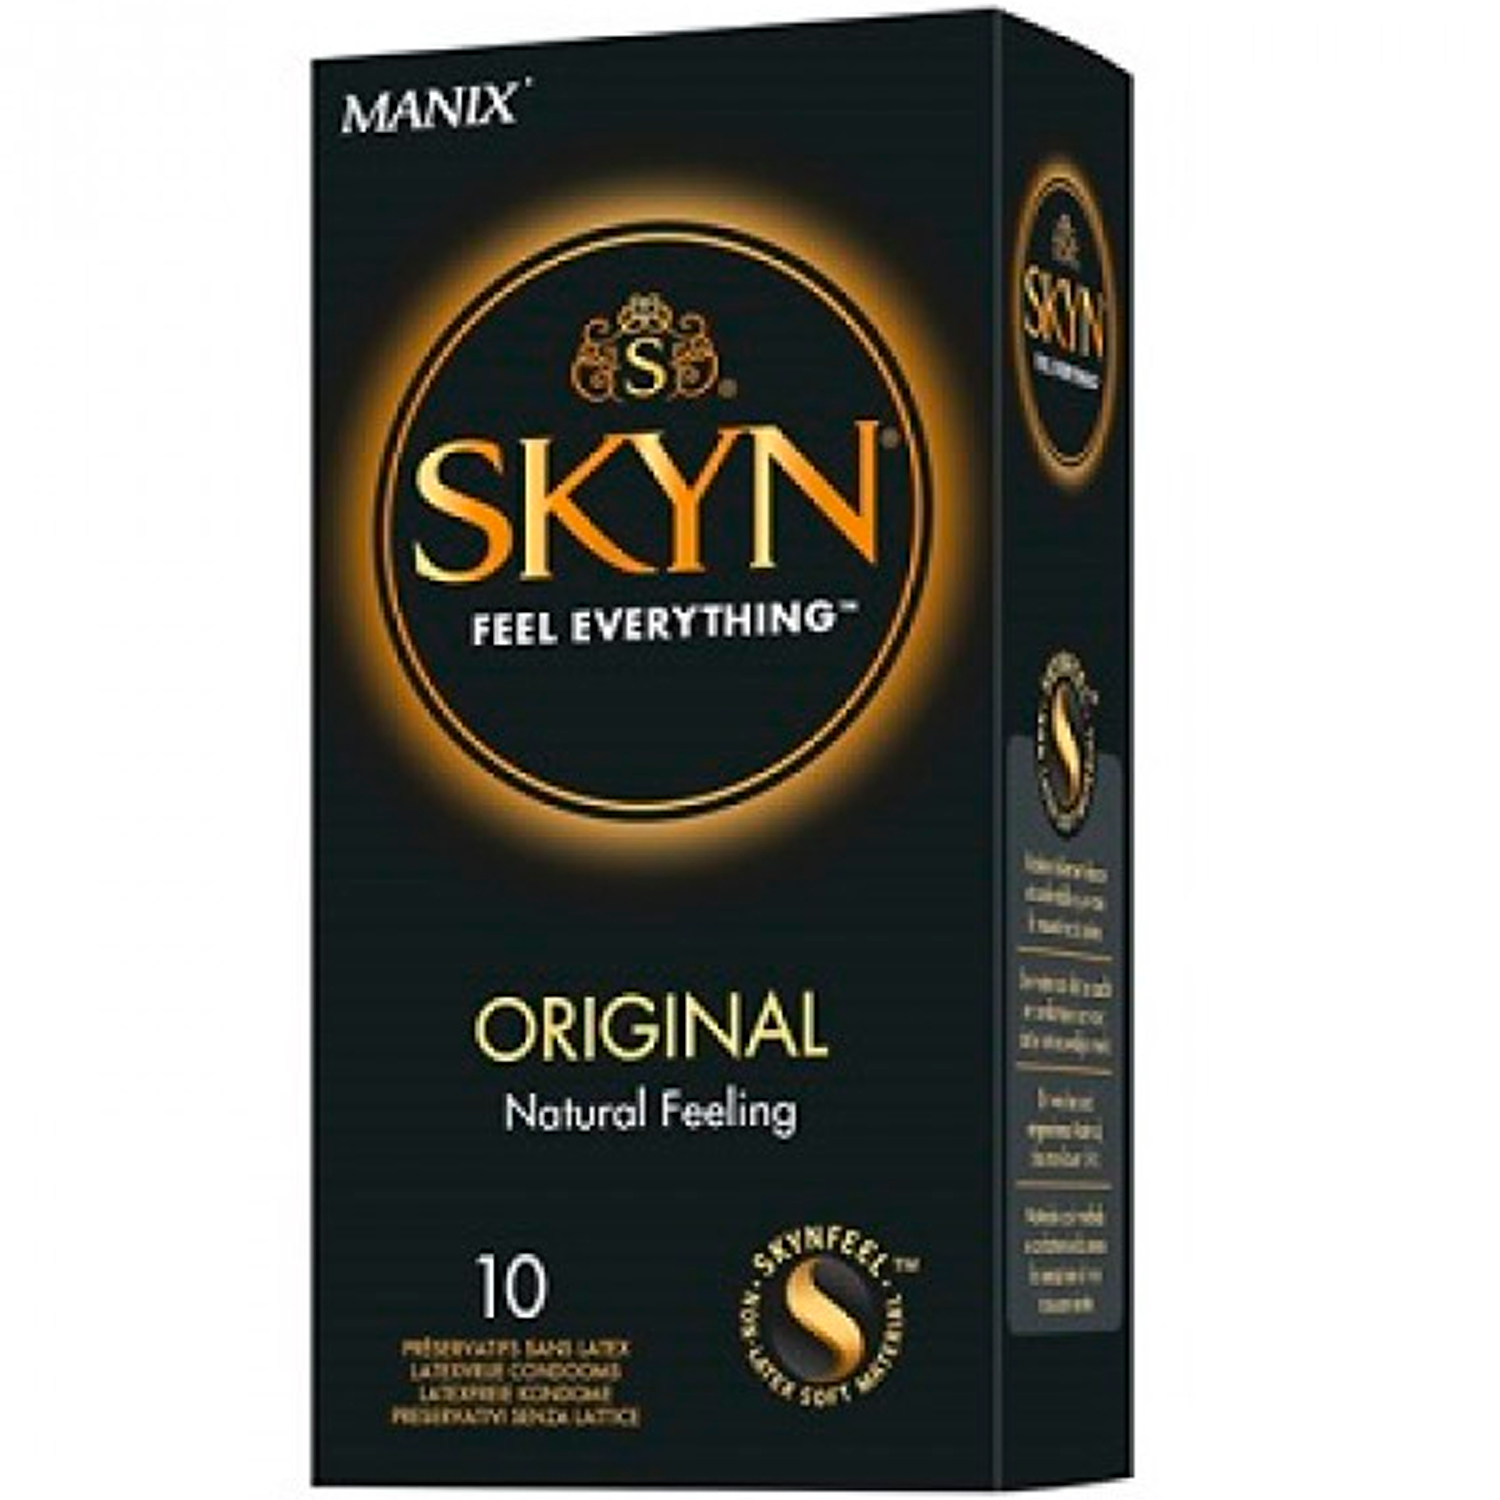 Manix SKYN Original Latexfria Kondomer 10 st